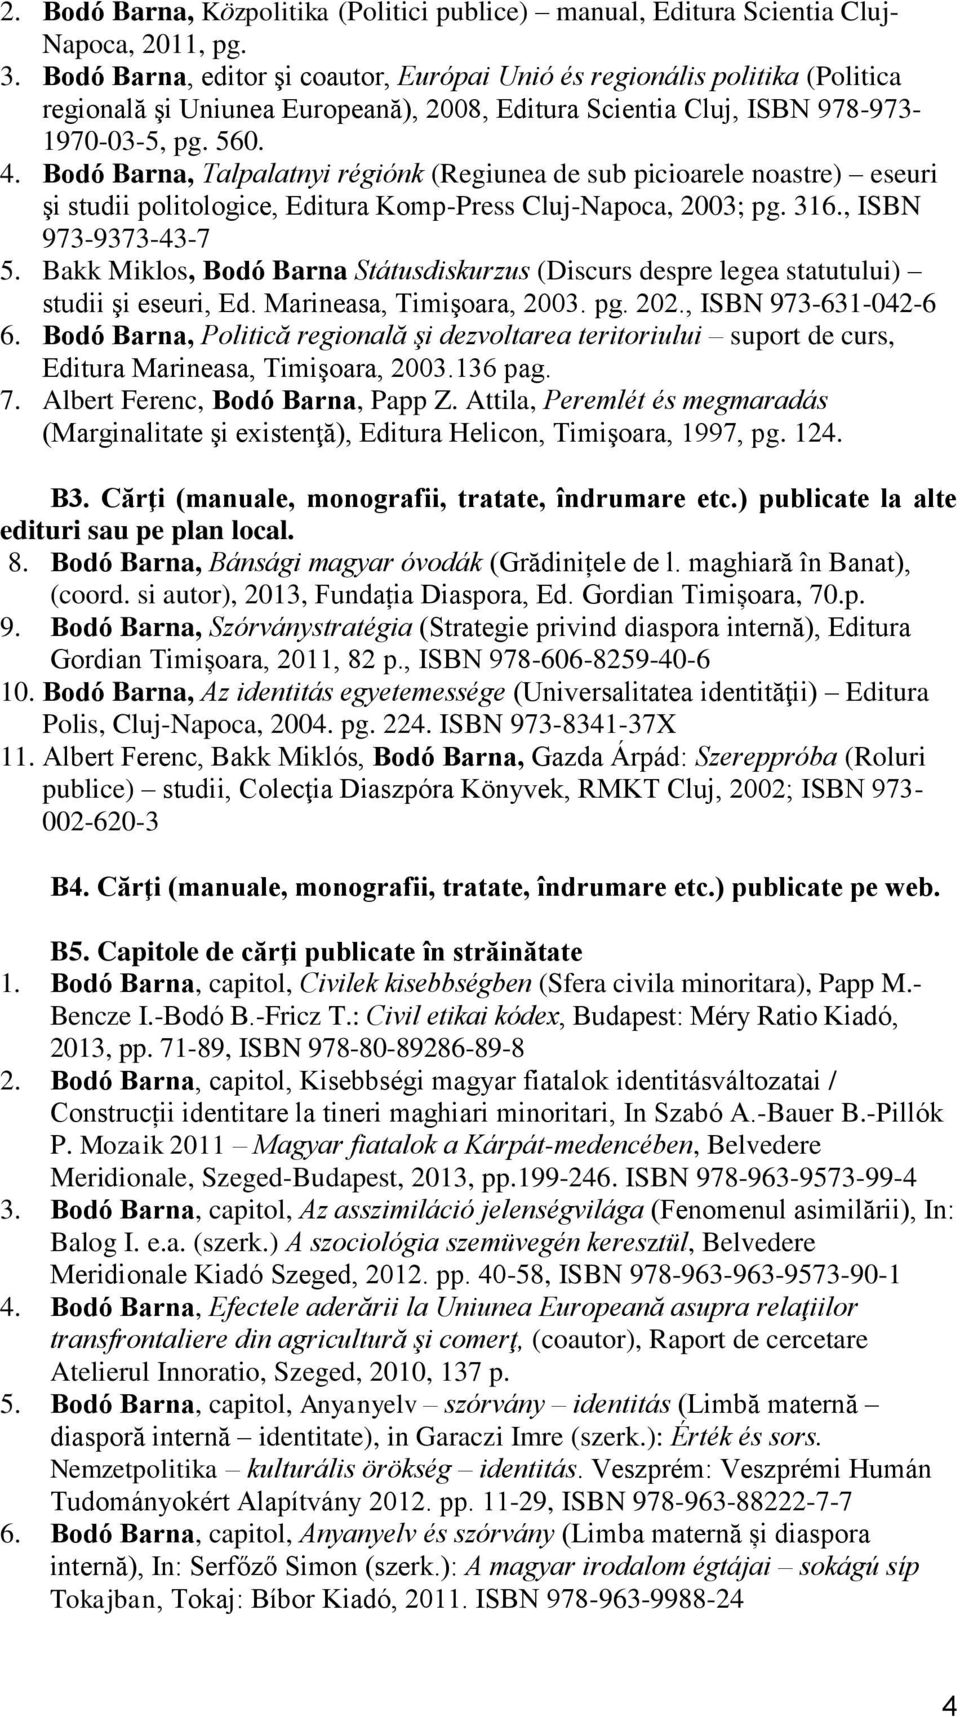 Bodó Barna, Talpalatnyi régiónk (Regiunea de sub picioarele noastre) eseuri şi studii politologice, Editura Komp-Press Cluj-Napoca, 2003; pg. 316., ISBN 973-9373-43-7 5.